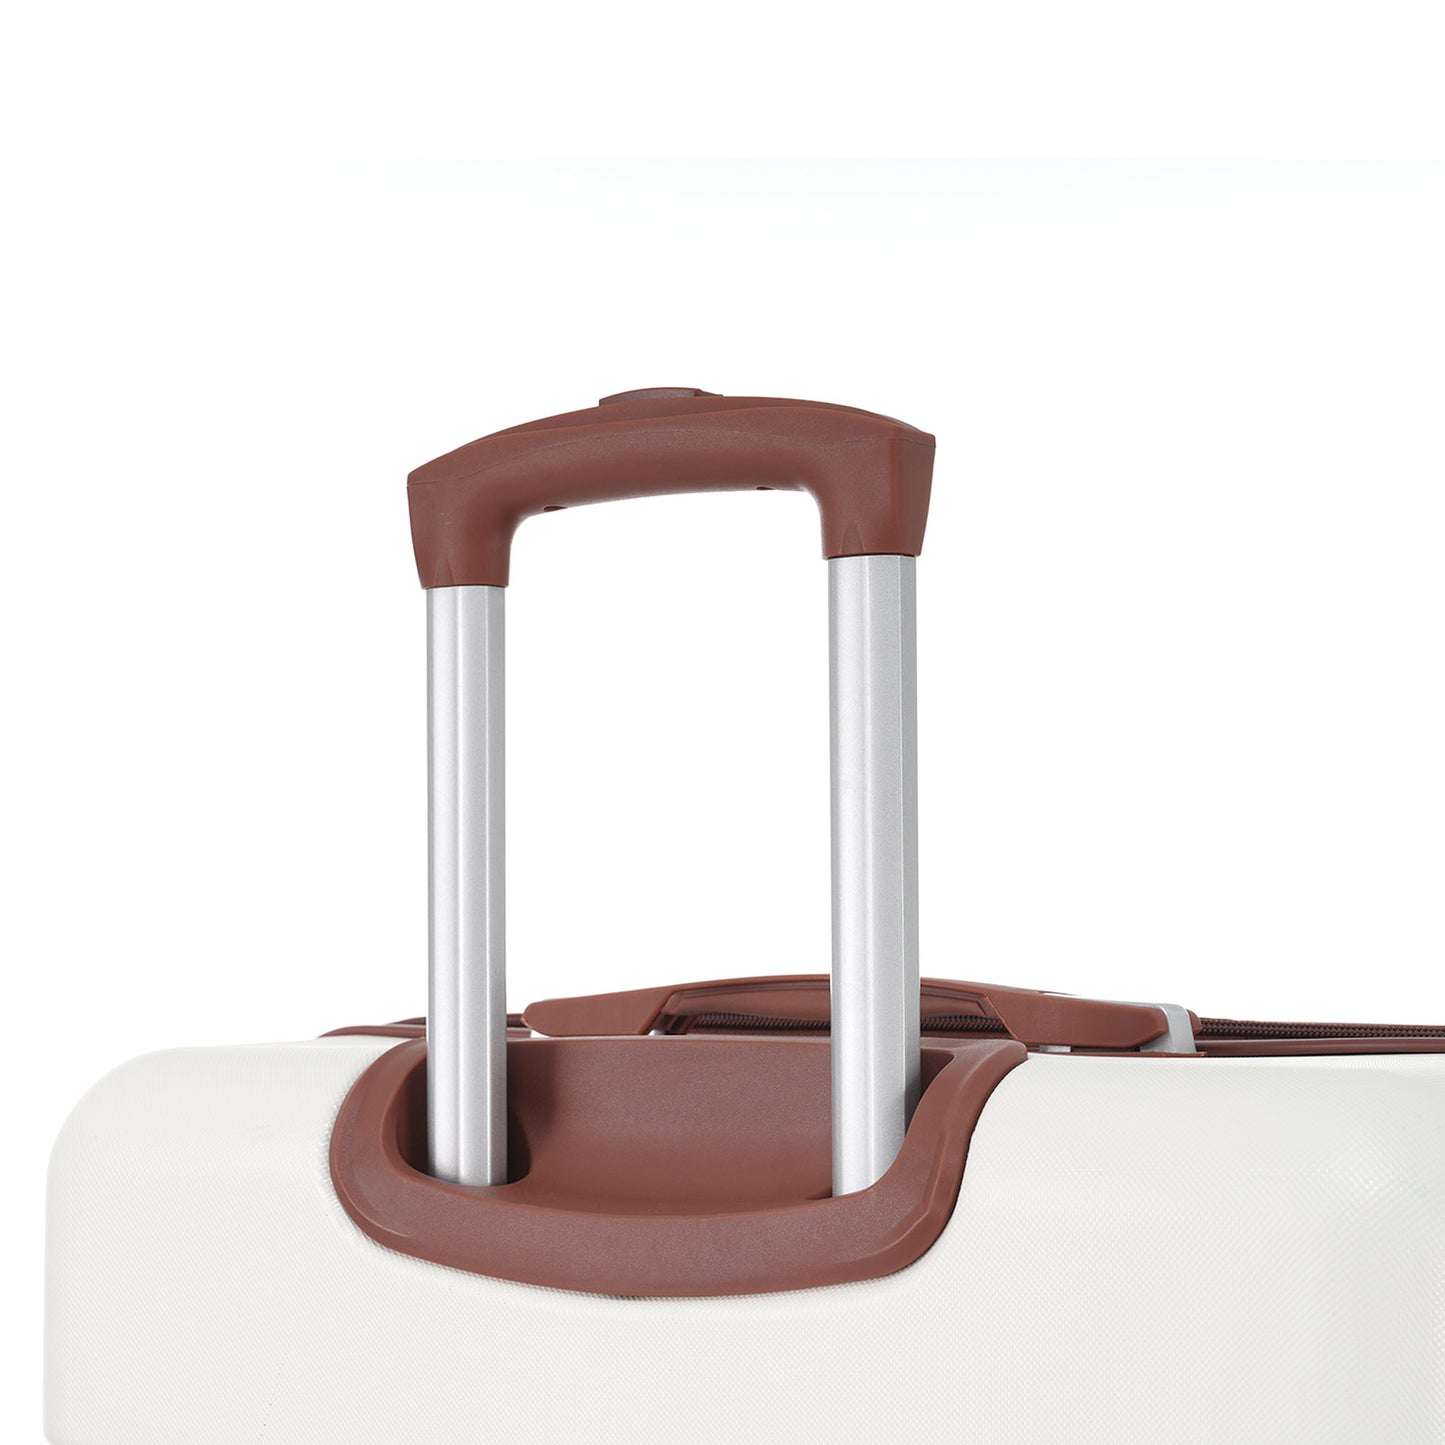 Bagage vintage blanc 24" 1 pièce avec serrure TSA, valise à roulettes légère et extensible